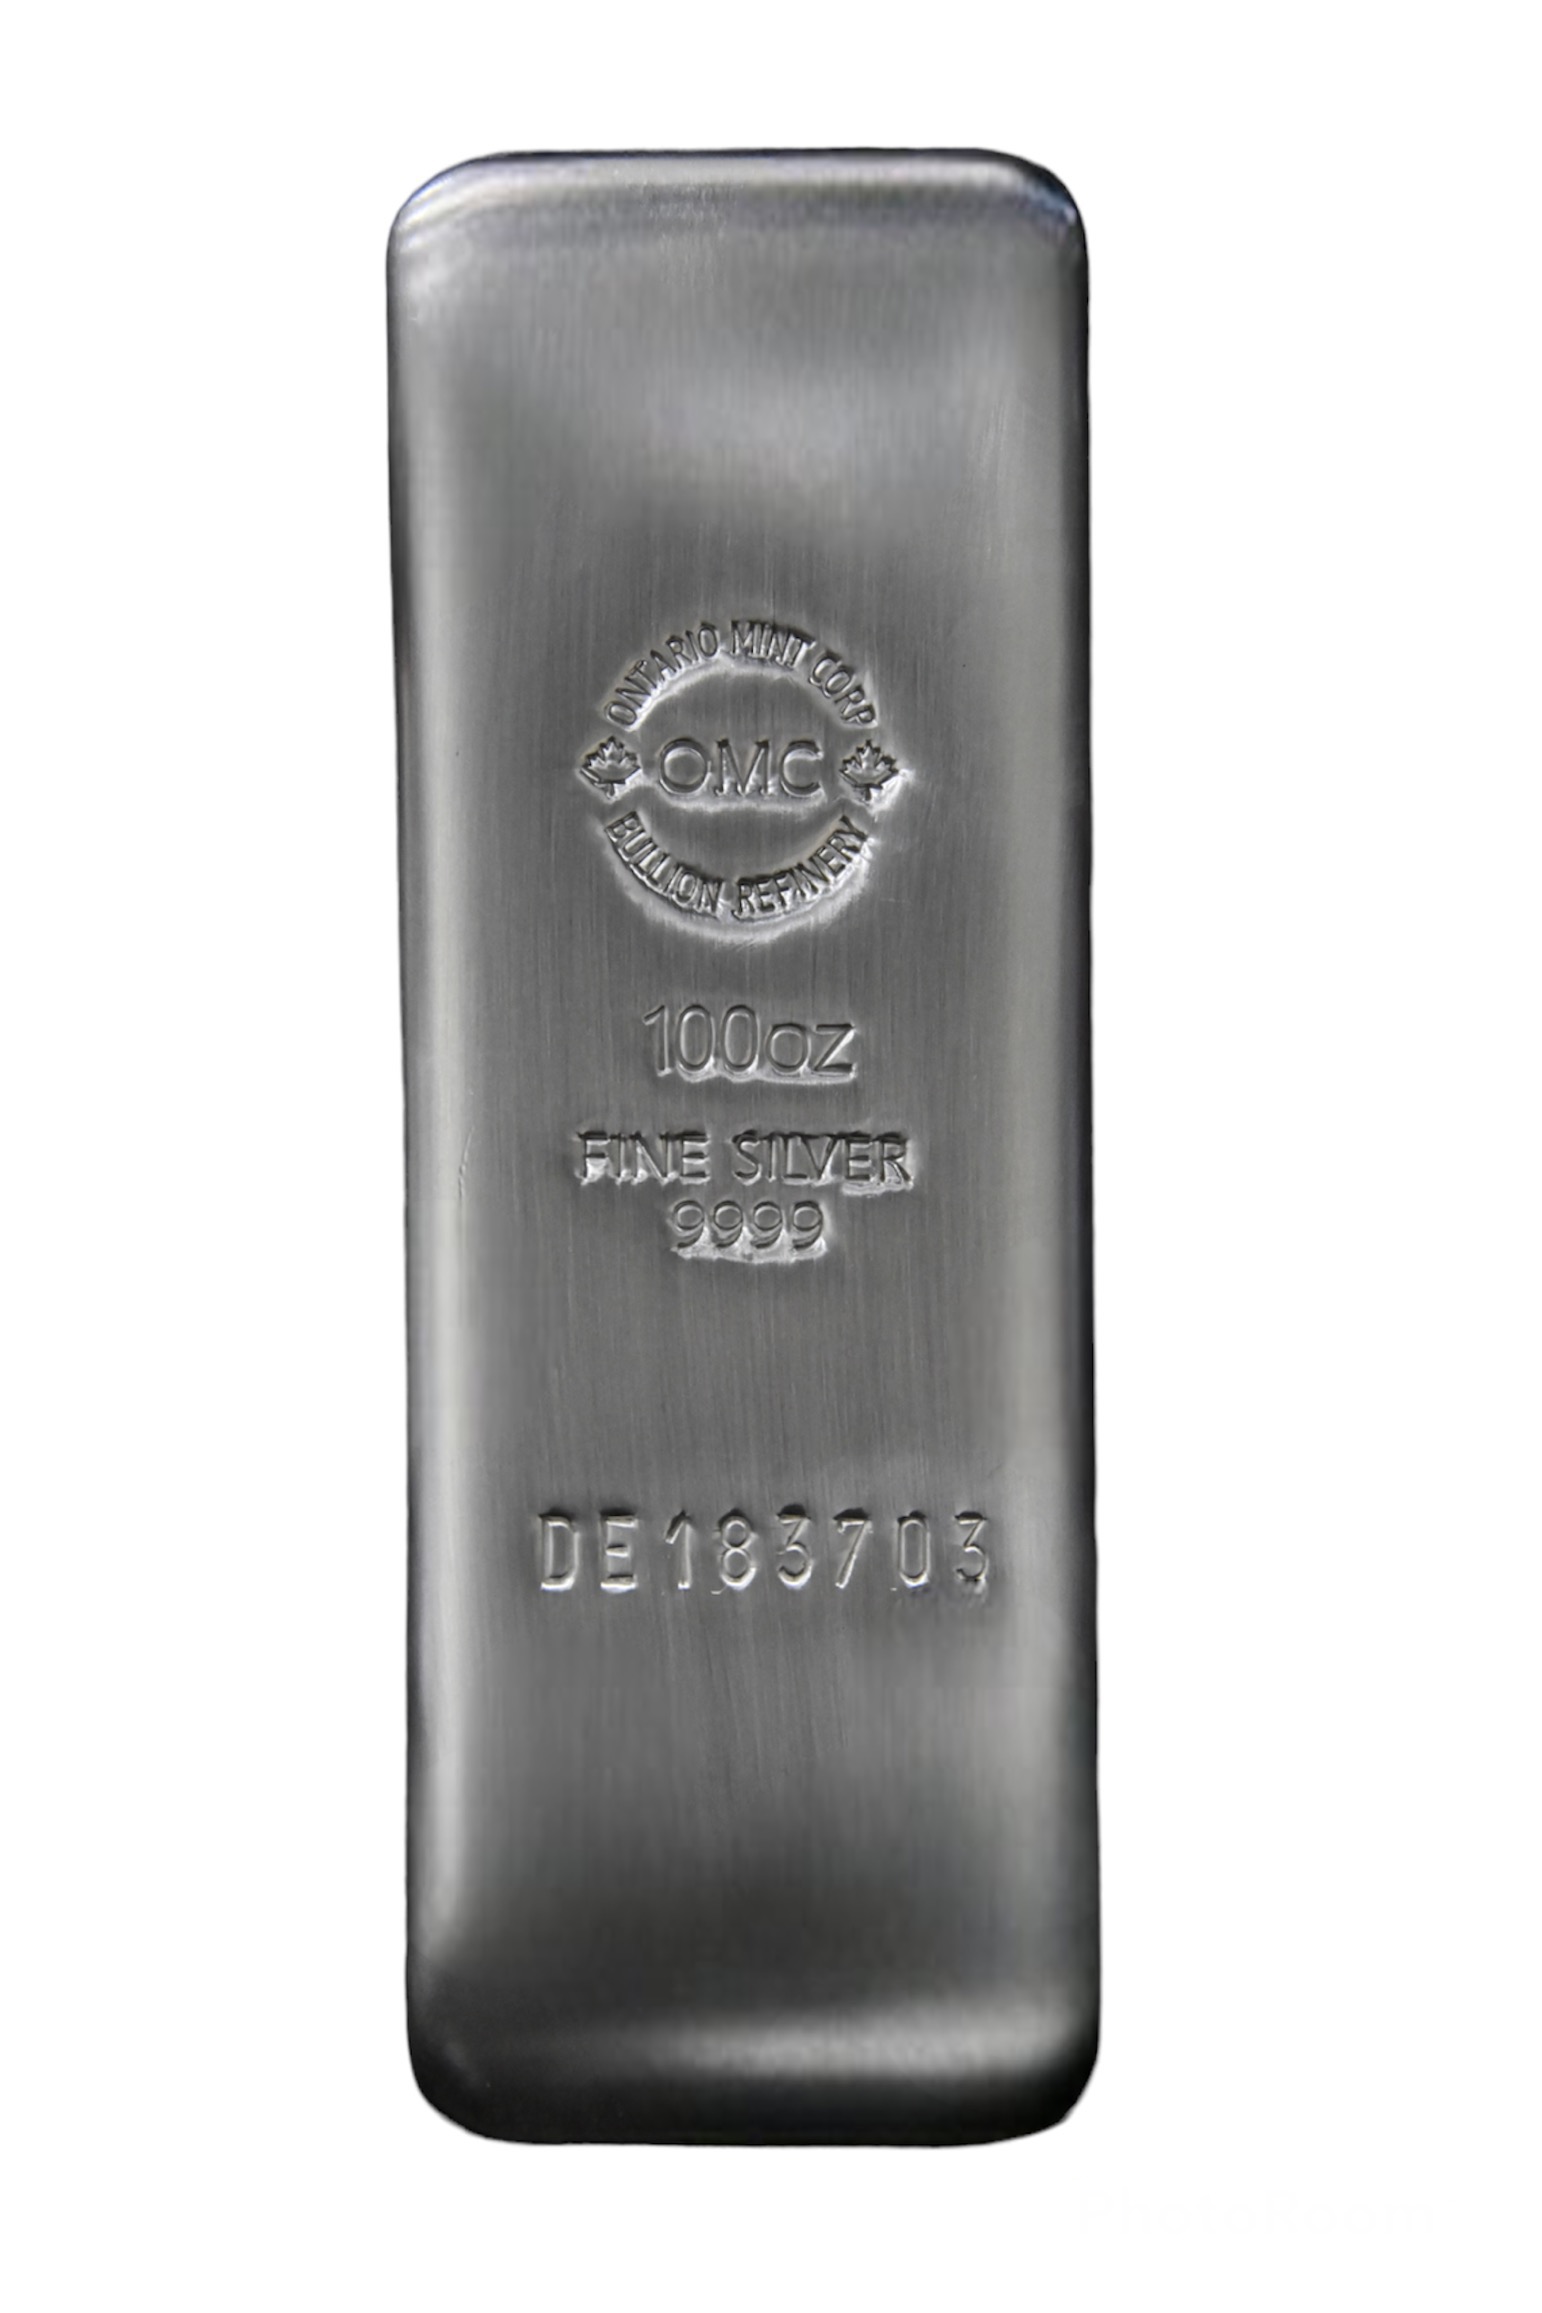 100oz OMC Silver Bar (99.99%)